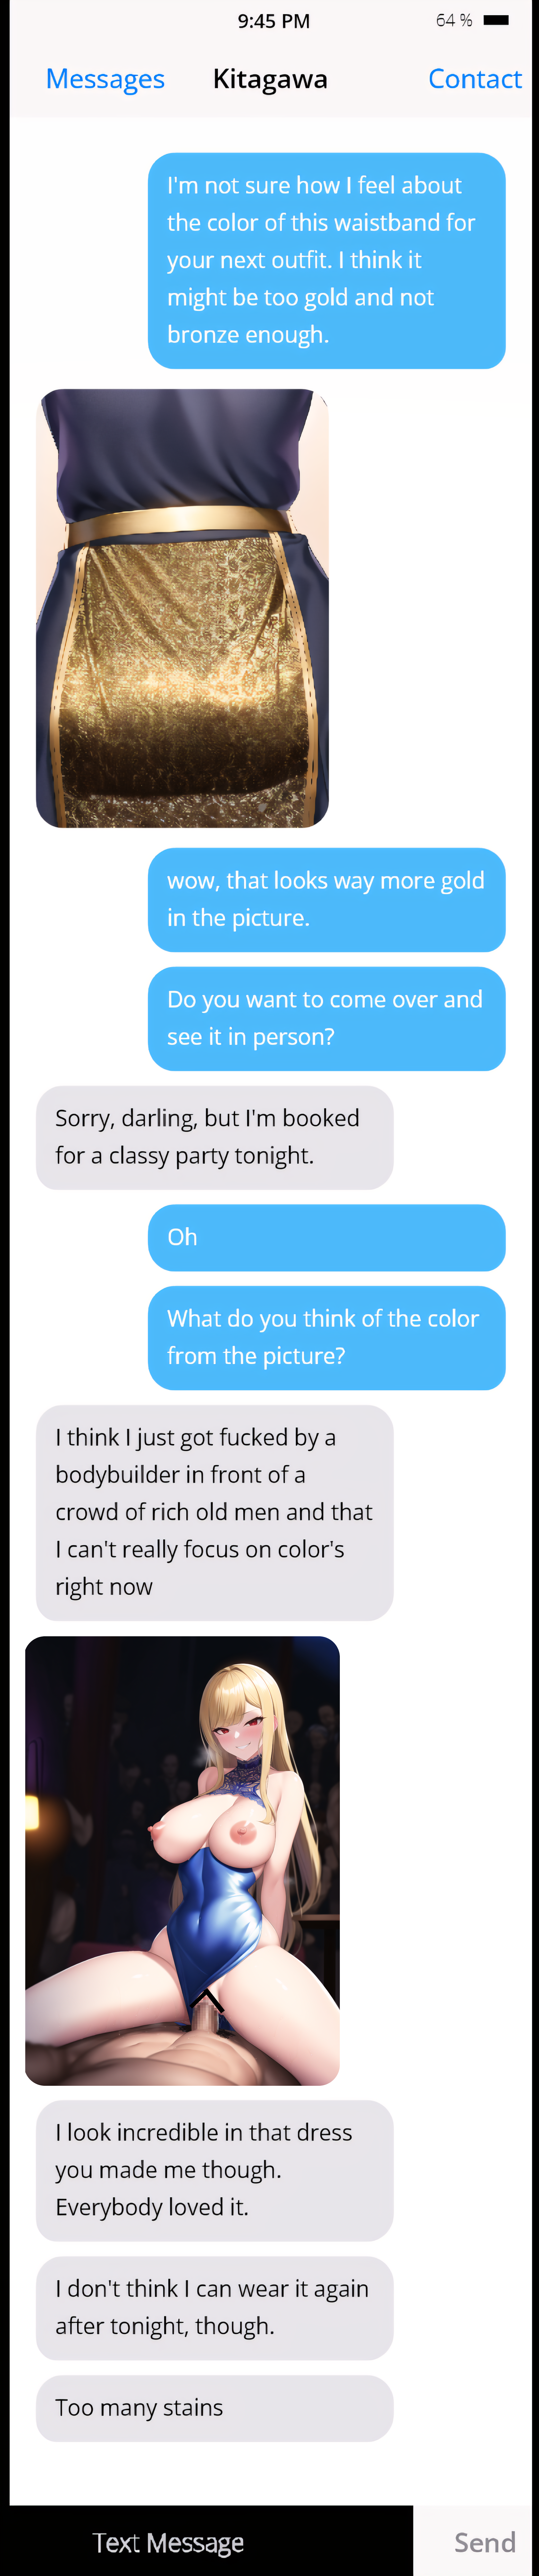 Cuck text porn